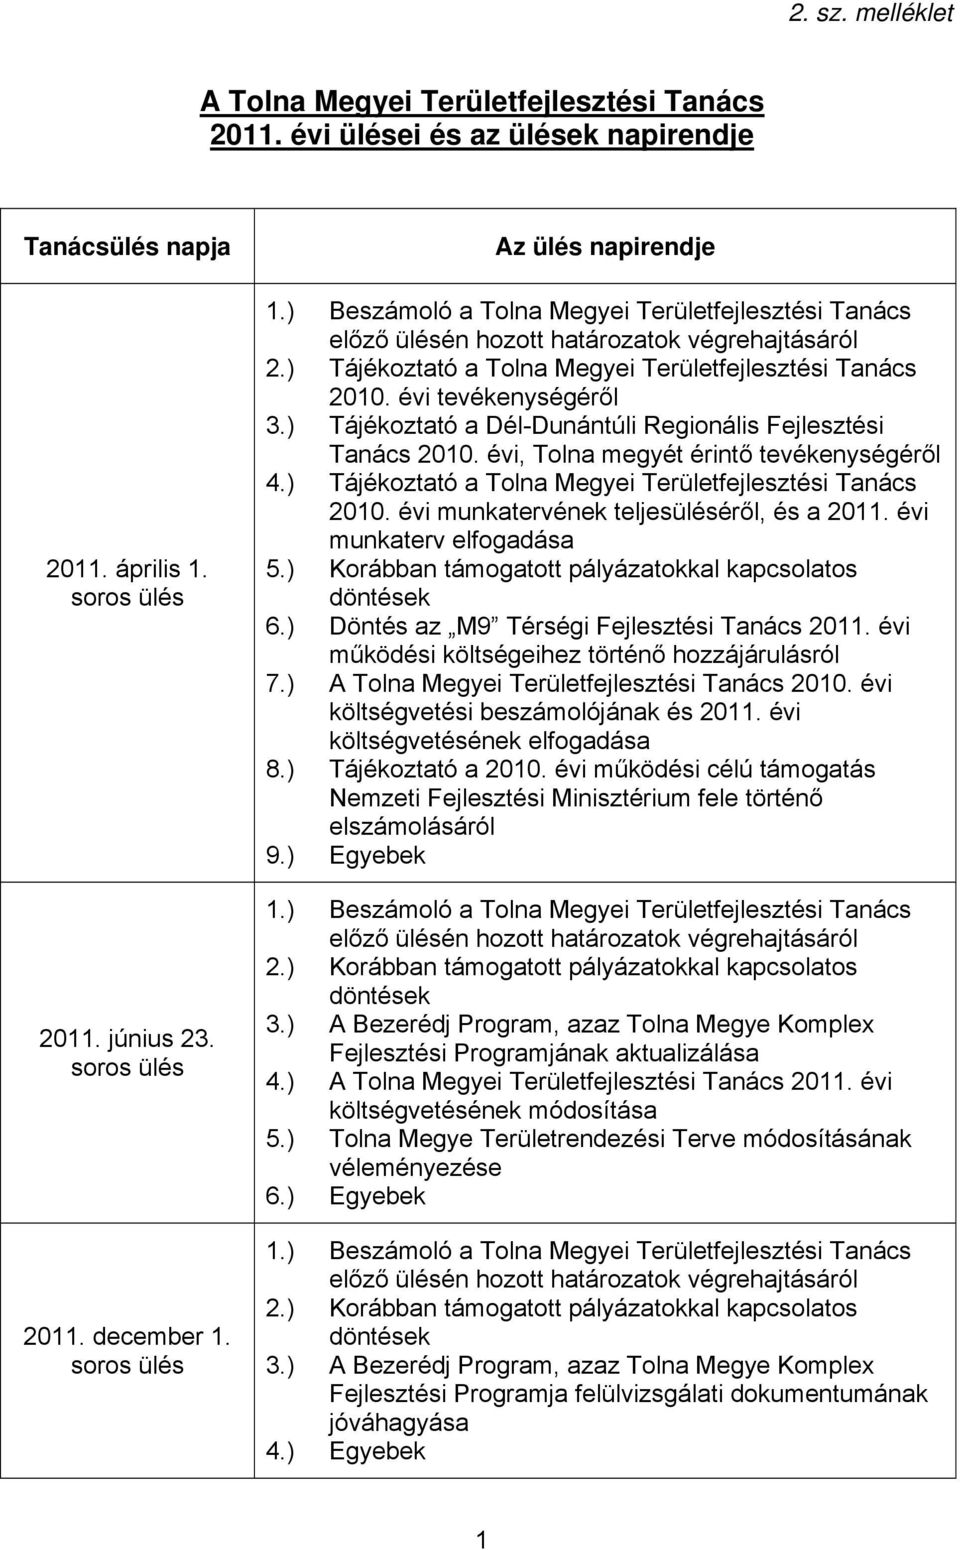 évi tevékenységéről 3.) Tájékoztató a Dél-Dunántúli Regionális Fejlesztési Tanács 2010. évi, Tolna megyét érintő tevékenységéről 4.) Tájékoztató a Tolna Megyei Területfejlesztési Tanács 2010.